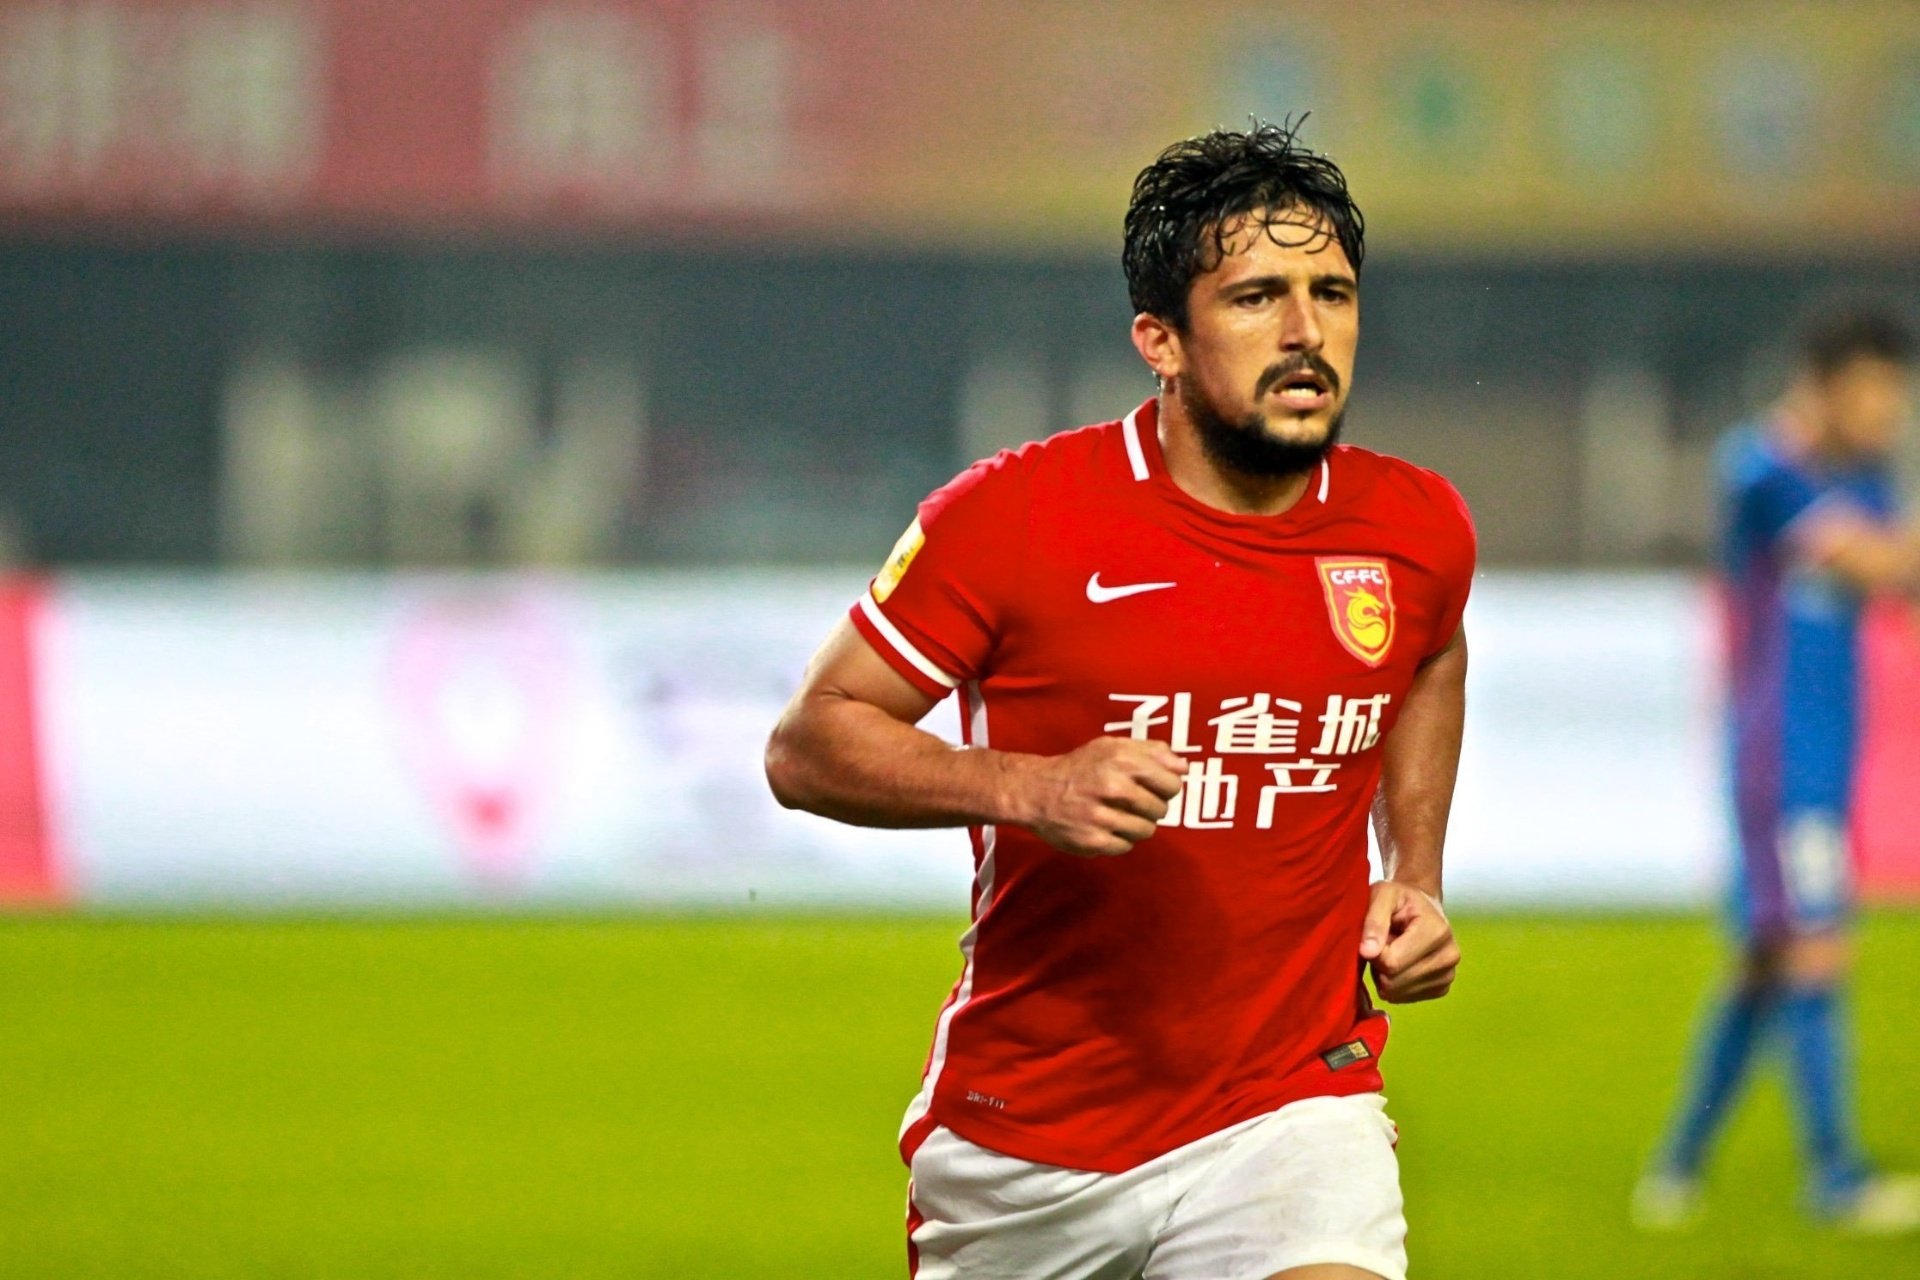 Gols marcados pelo Guangzhou FC: 4 gols em 18 jogos - Contrato com o Guangzhou FC até: 31/12/2022.